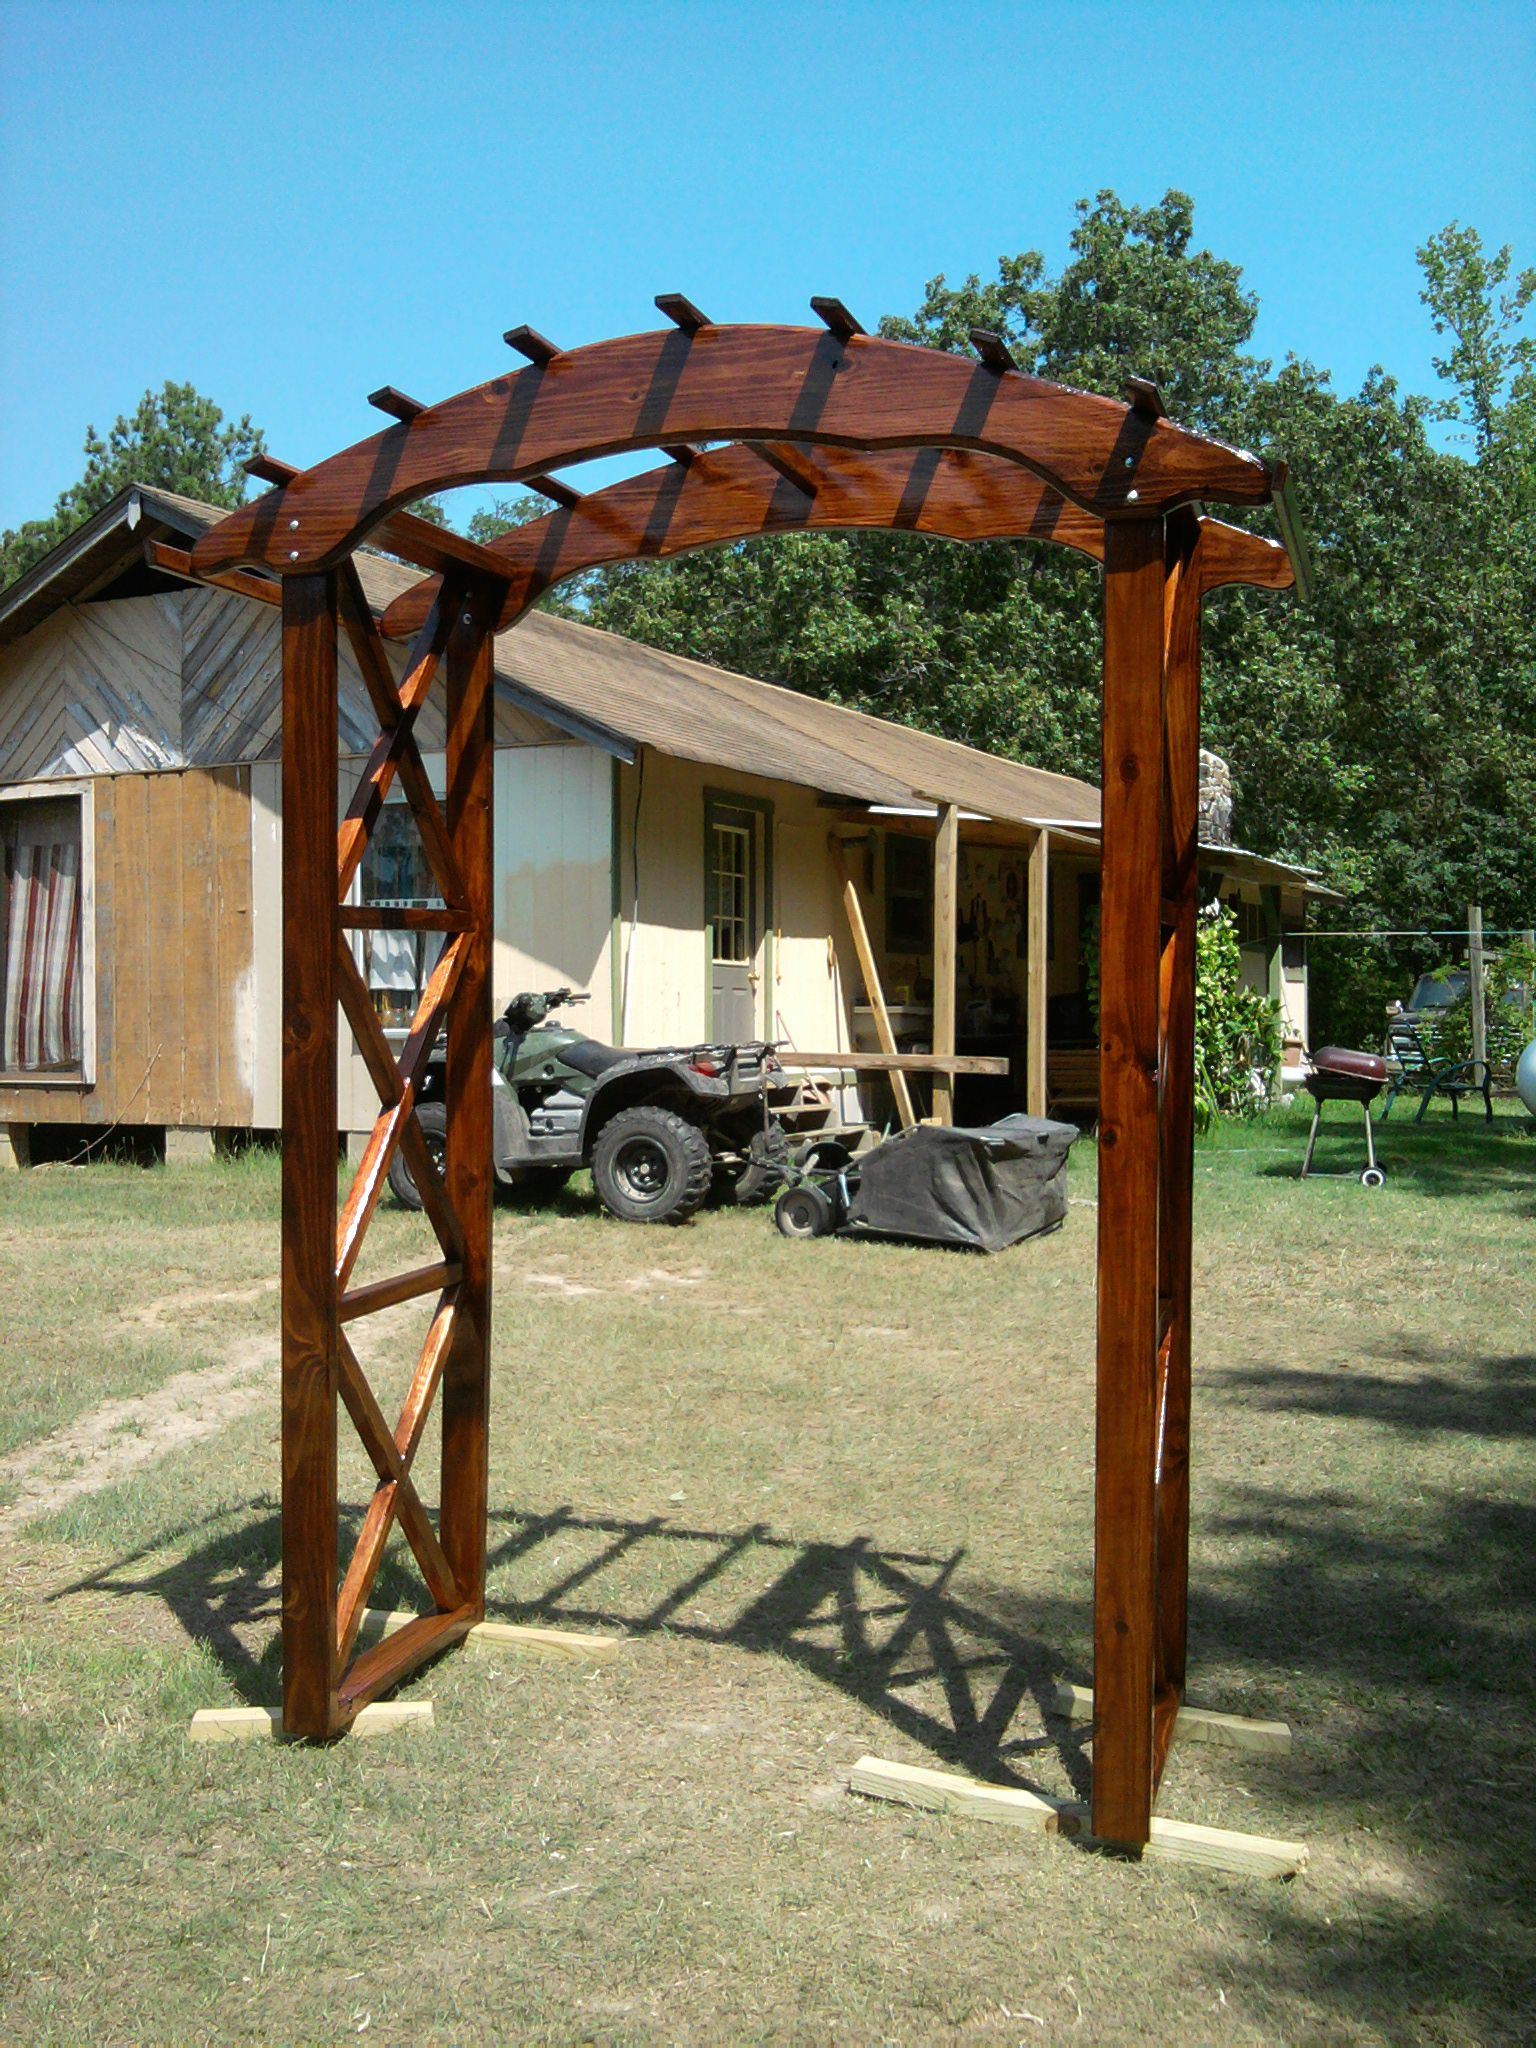 DIY Wedding Arch Kits
 rustic arbor plans Rustic X wedding arch